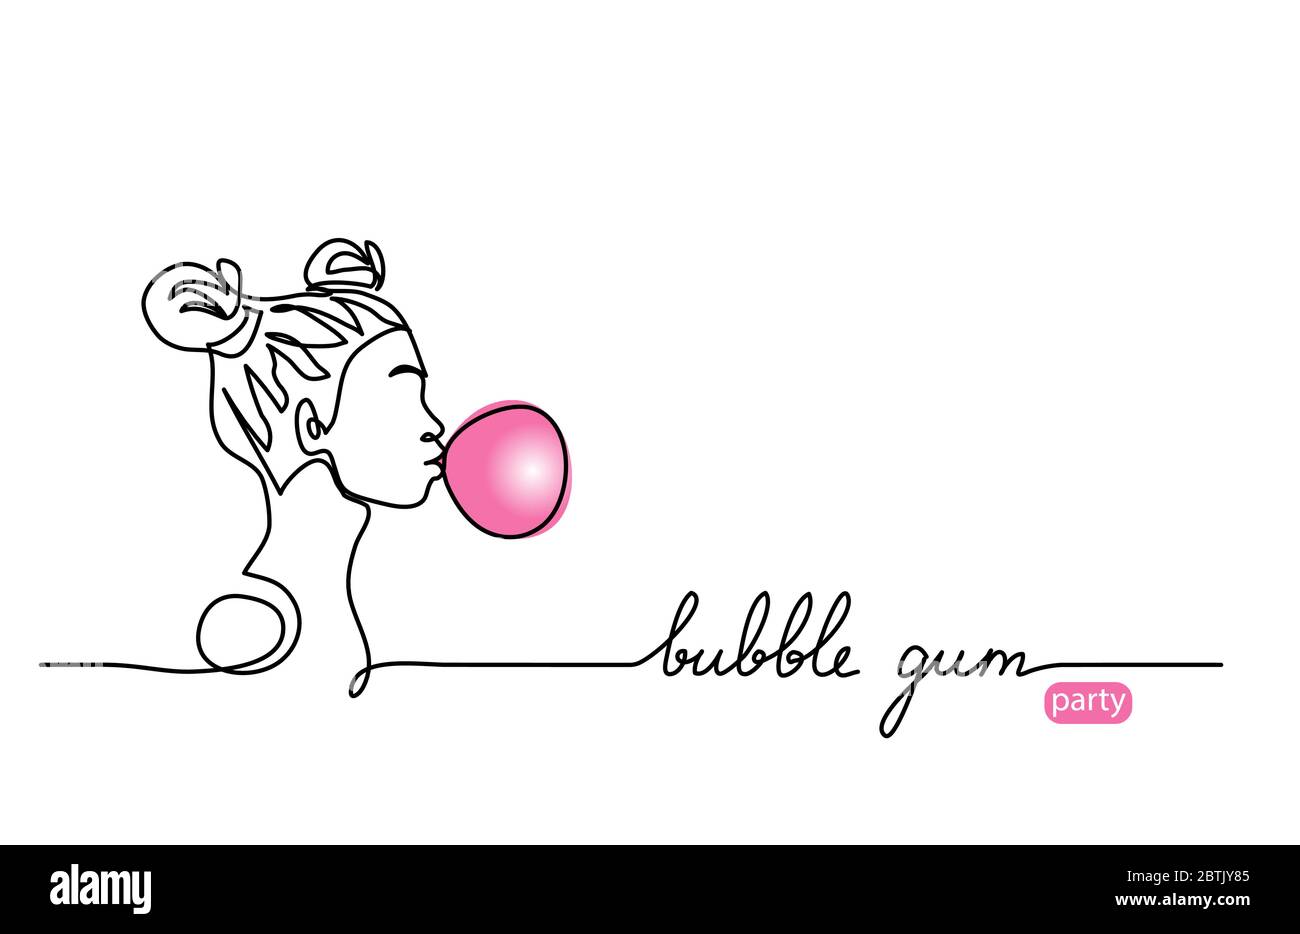 Blase Gummi Ballon Vektor-Skizze. Junges Mädchen, Teenager mit Kaugummi Ball, einfache Illustration. Eine kontinuierliche Linie Zeichnung Web Banner, Hintergrund Stock Vektor